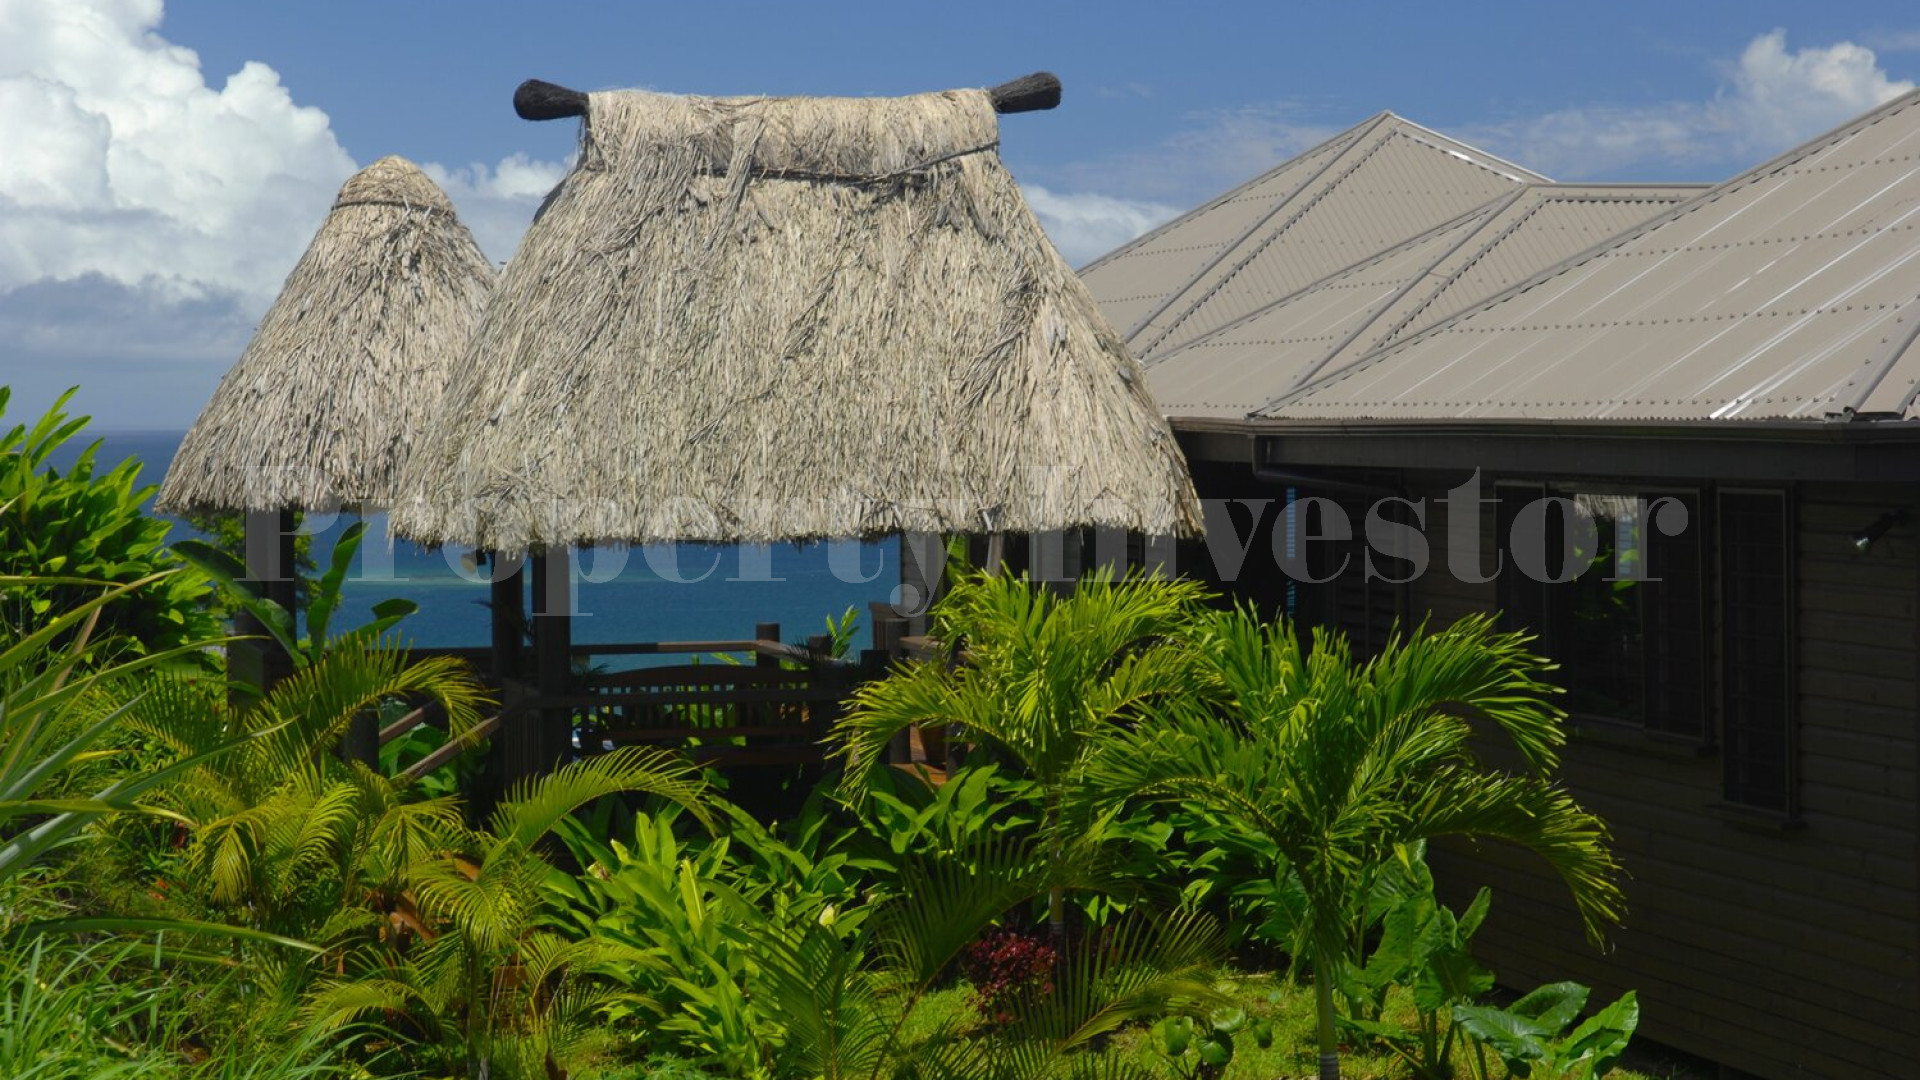 Продается обладатель наград роскошный 5* отель на Фиджи